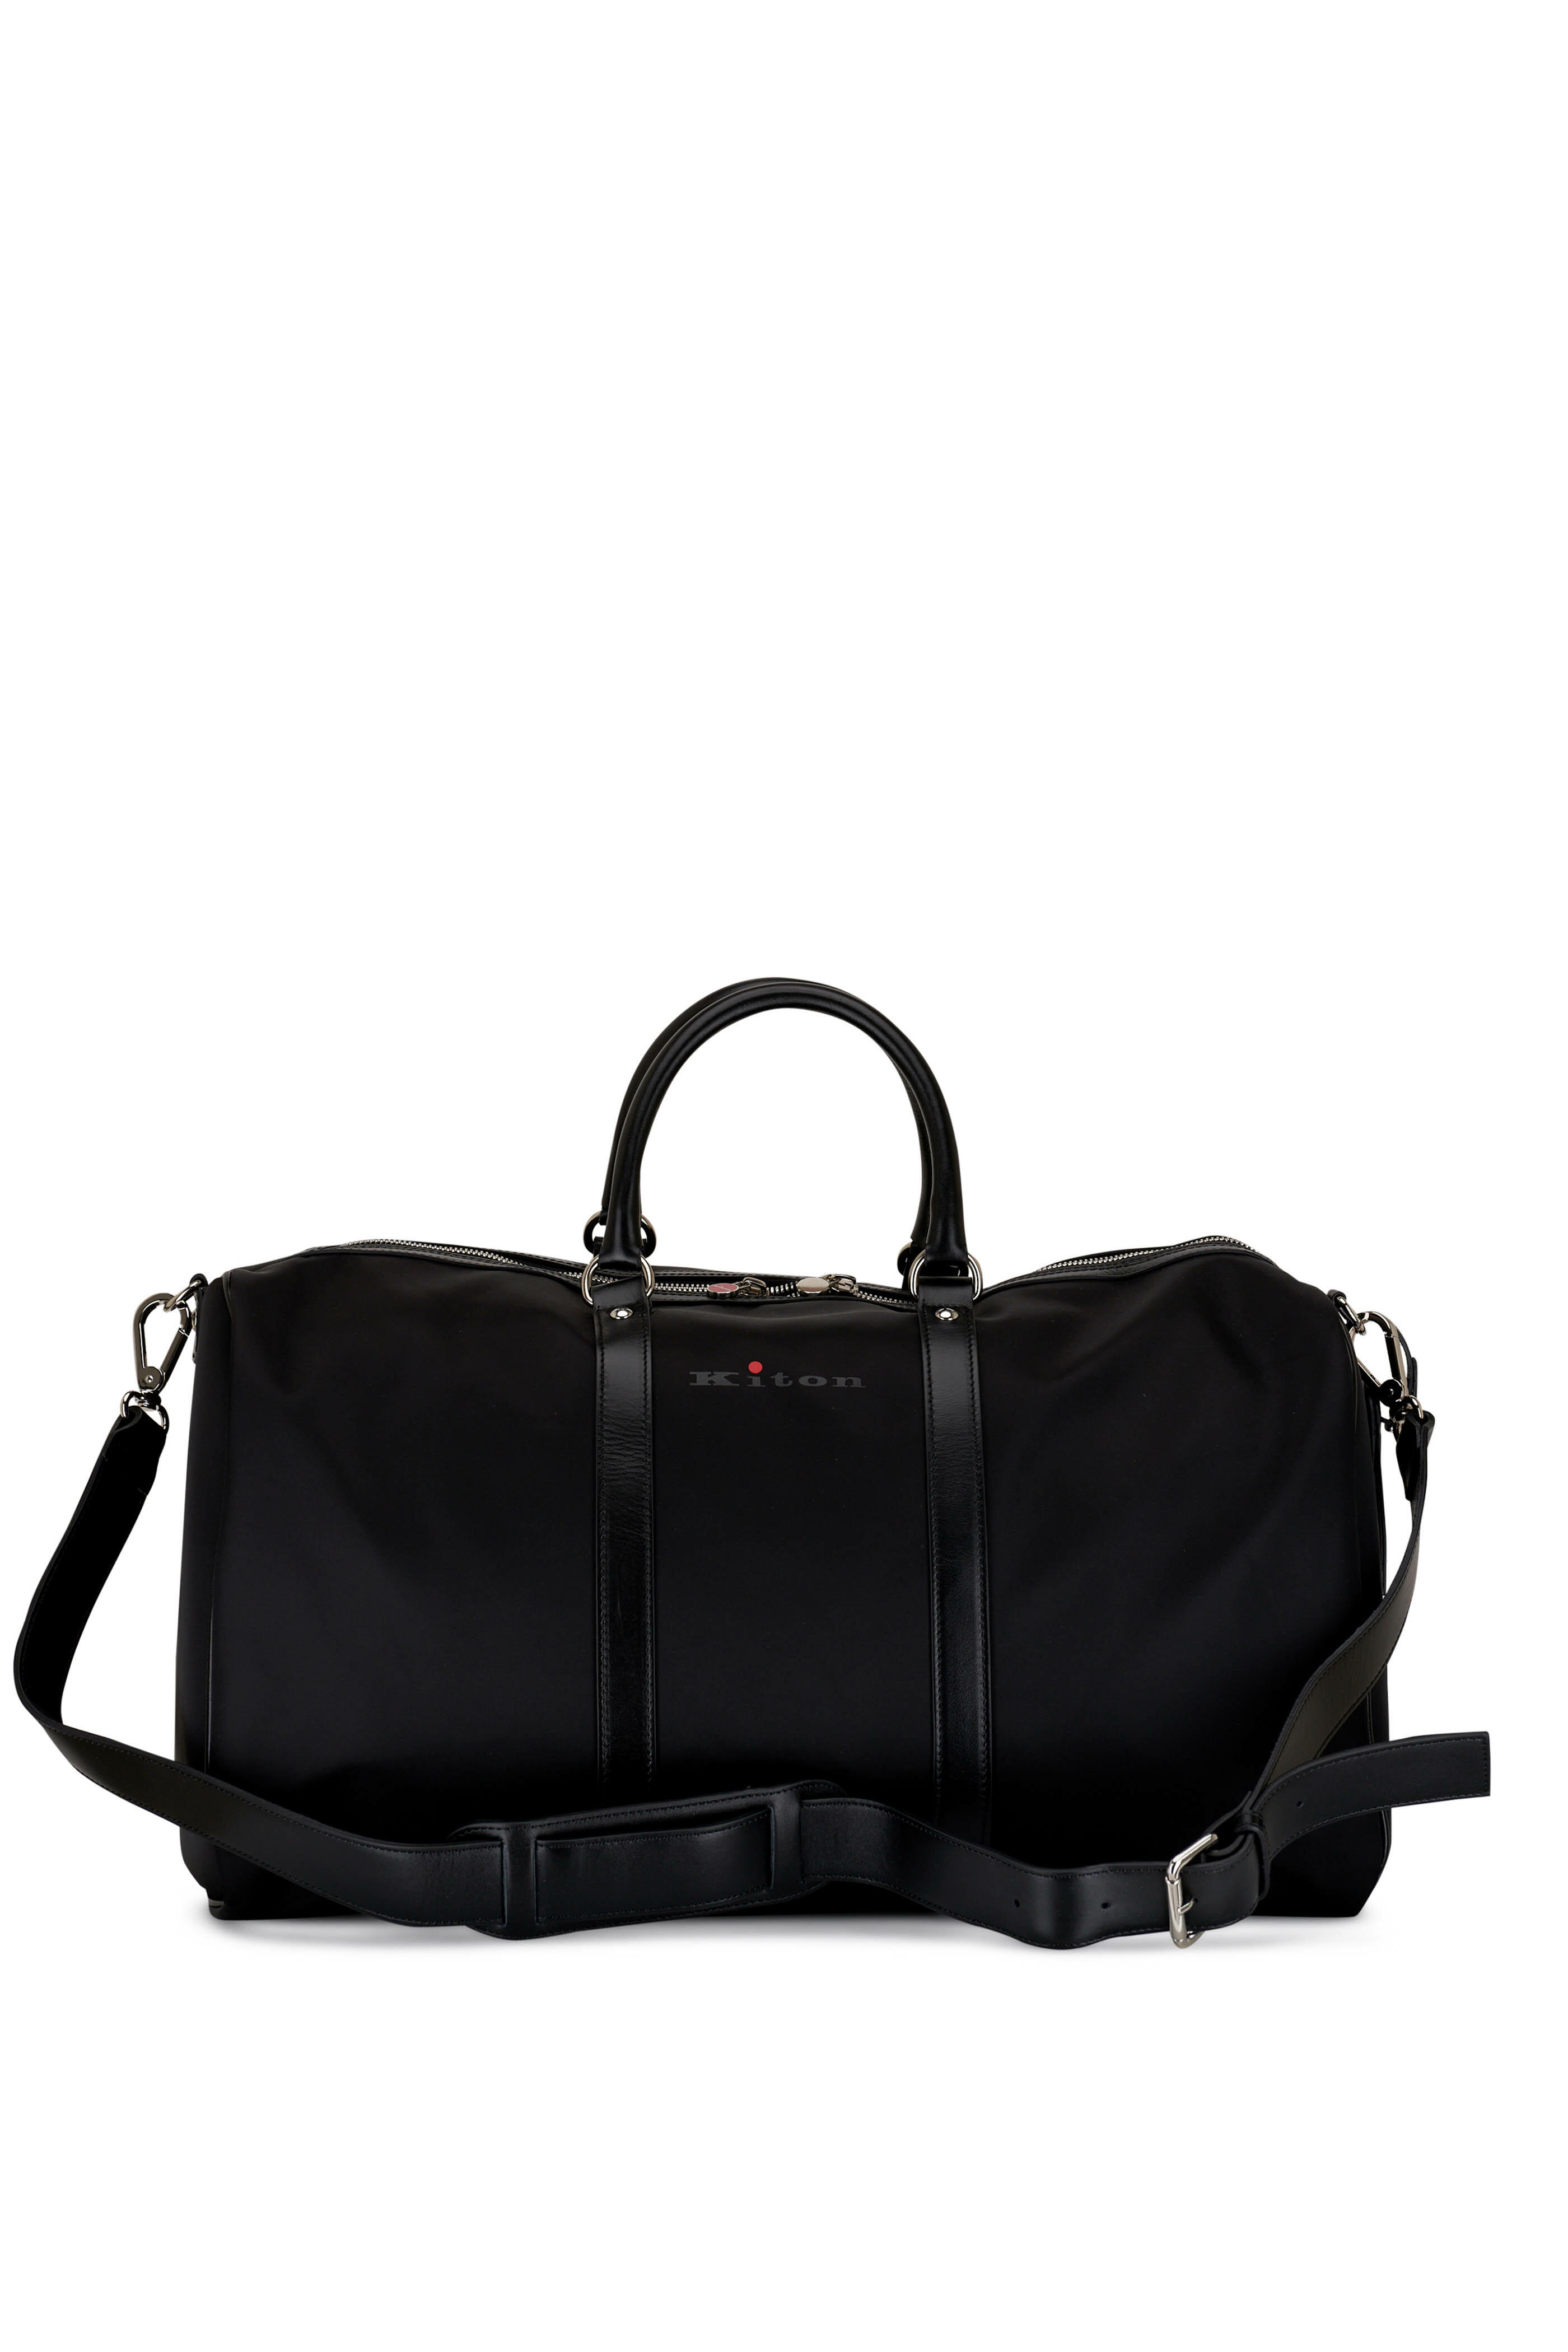 Kiton - Black Nylon & Leather Duffel Bag | Mitchell Stores